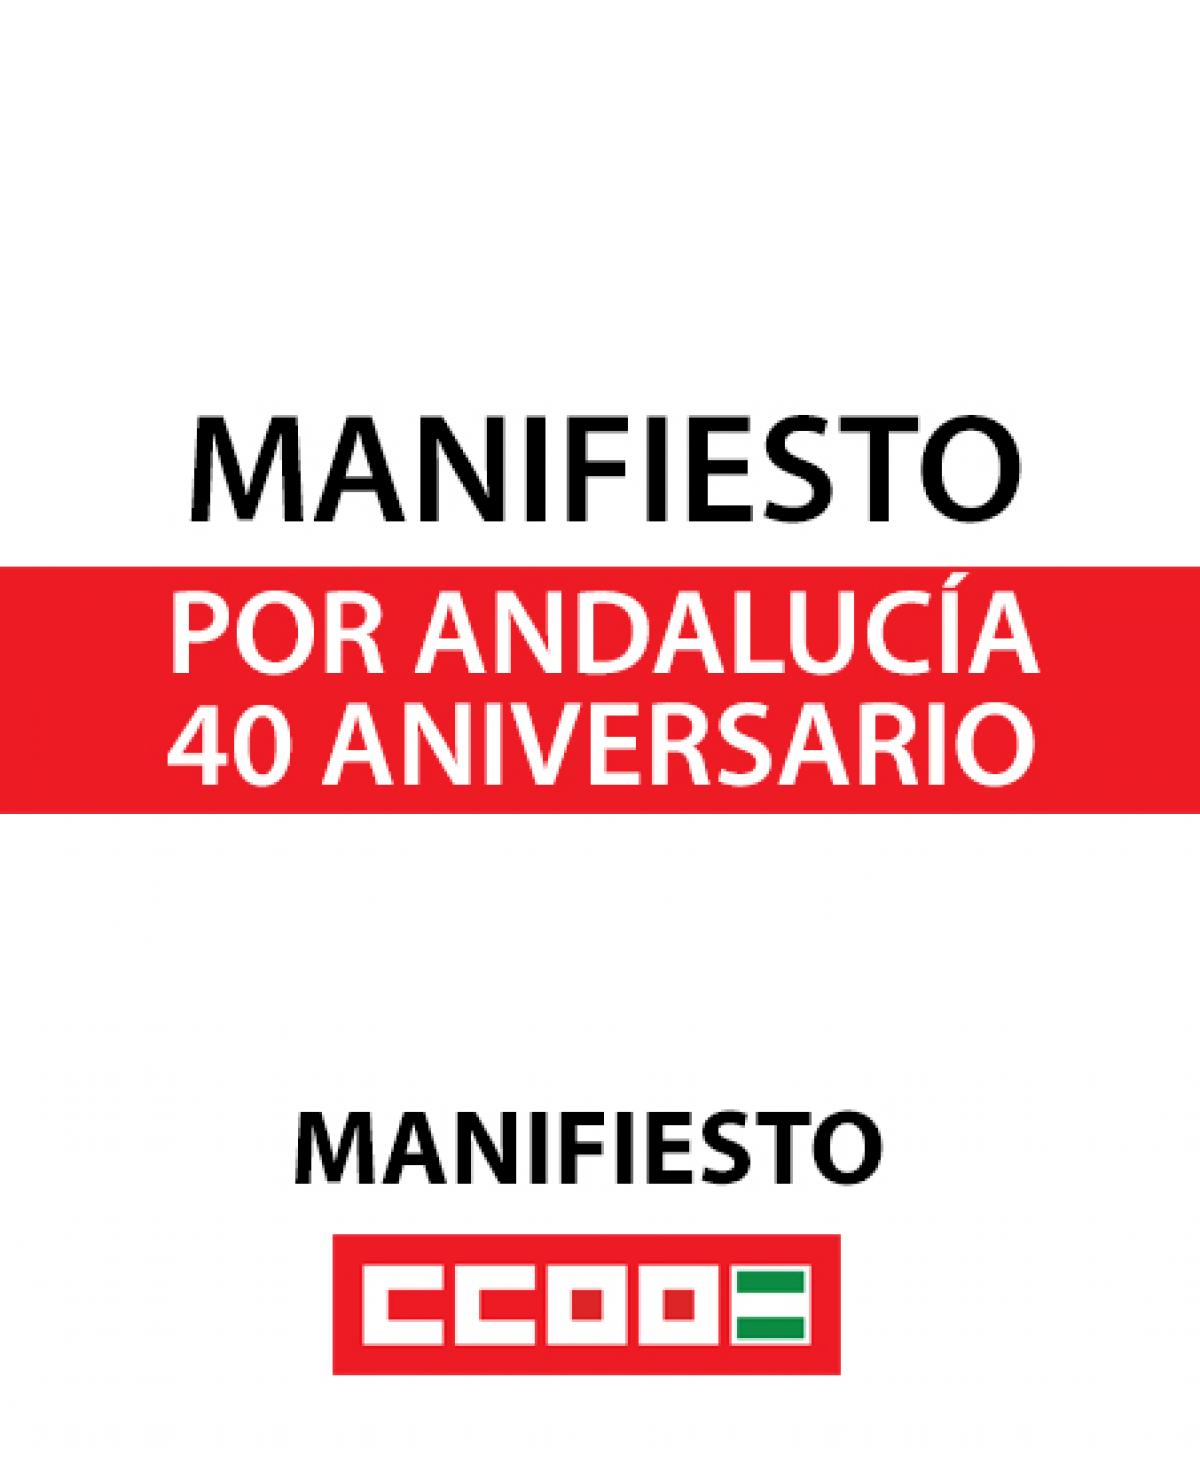 Manifiesto por Andalucía